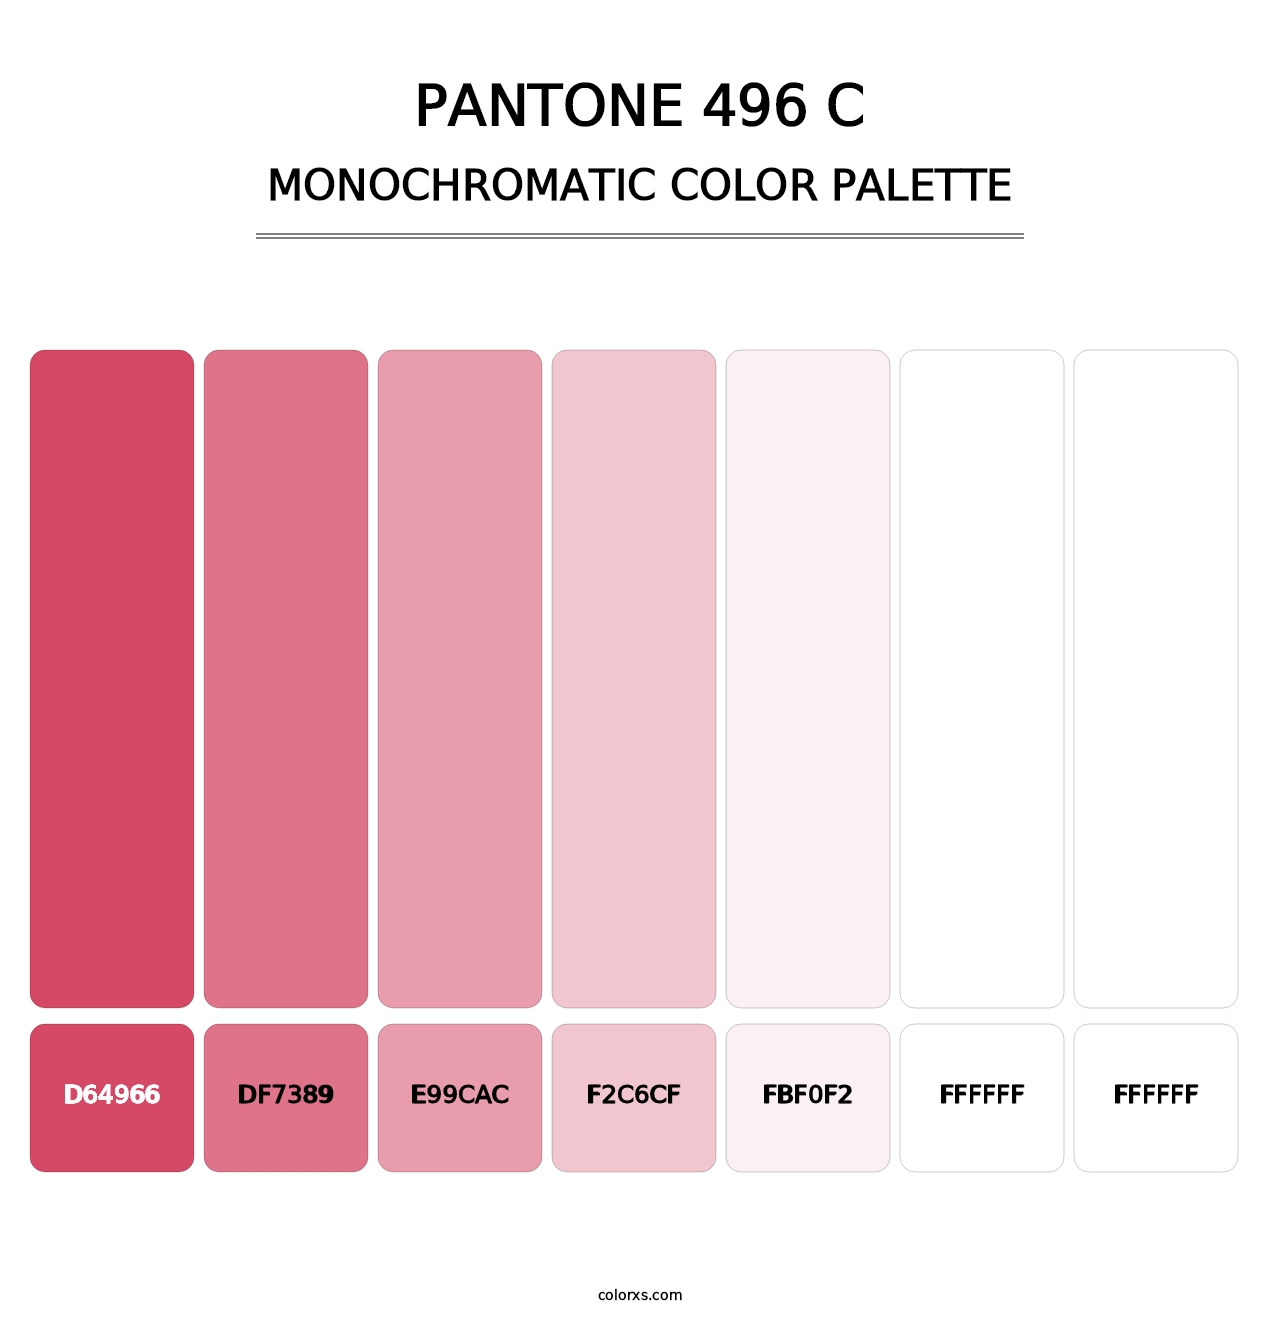 PANTONE 496 C - Monochromatic Color Palette